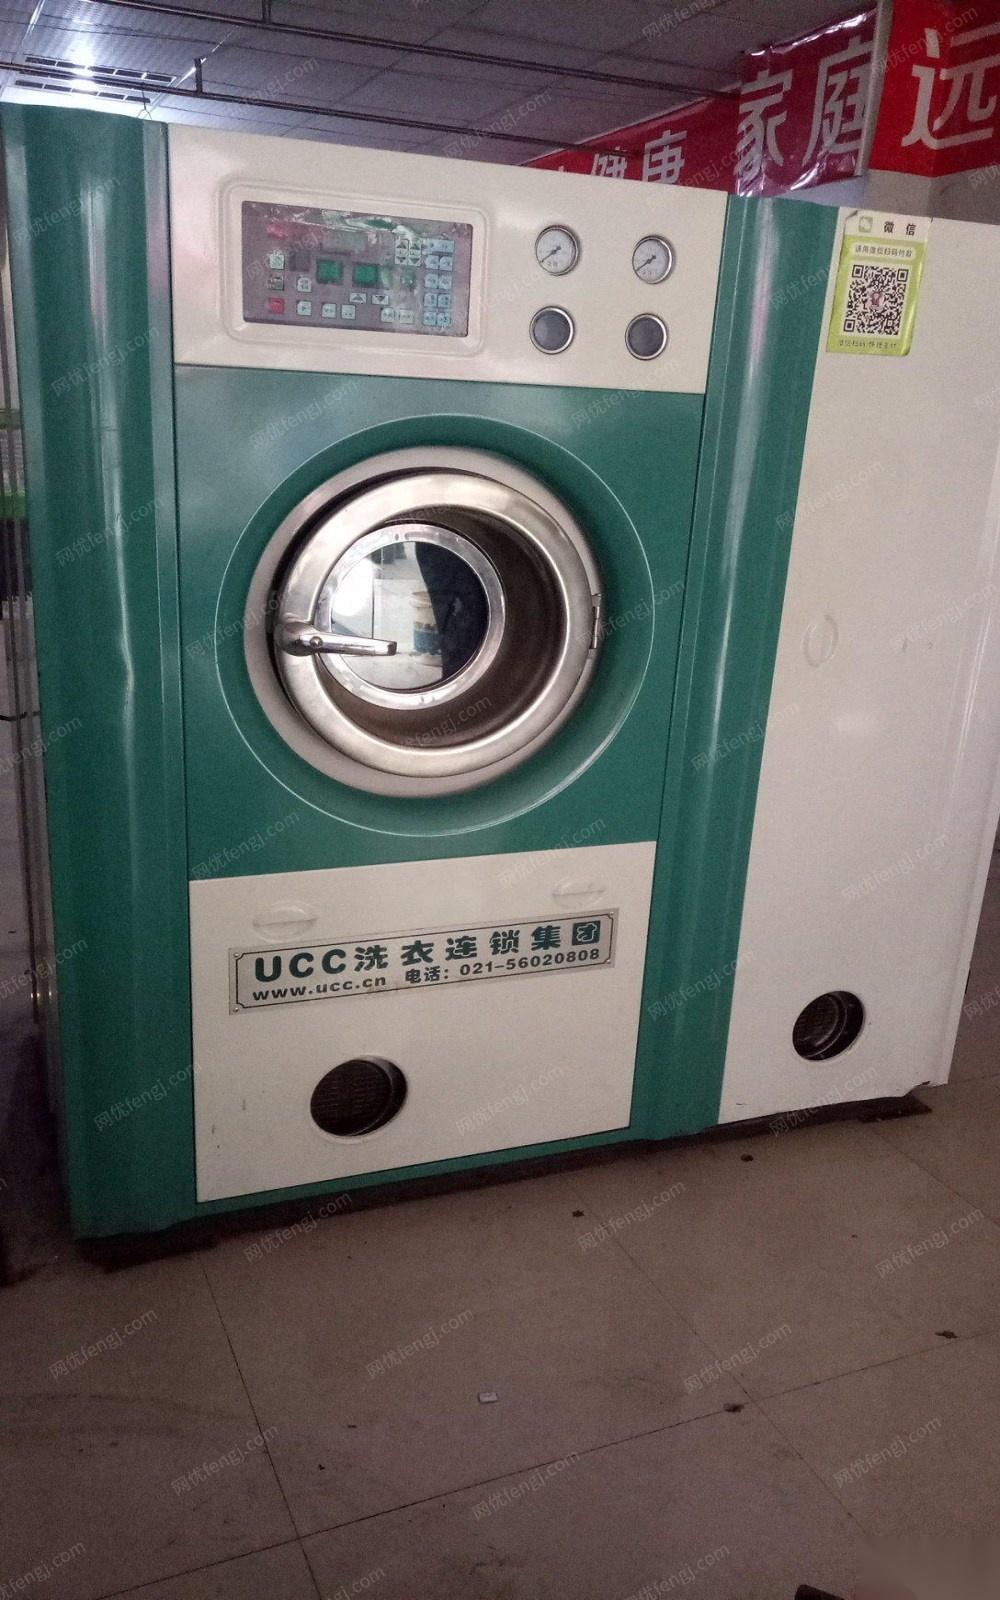 重庆开州转行出售闲置UCC 15公斤干洗机 15公斤烘干机 烫台 包装机各一台 打包价20000元